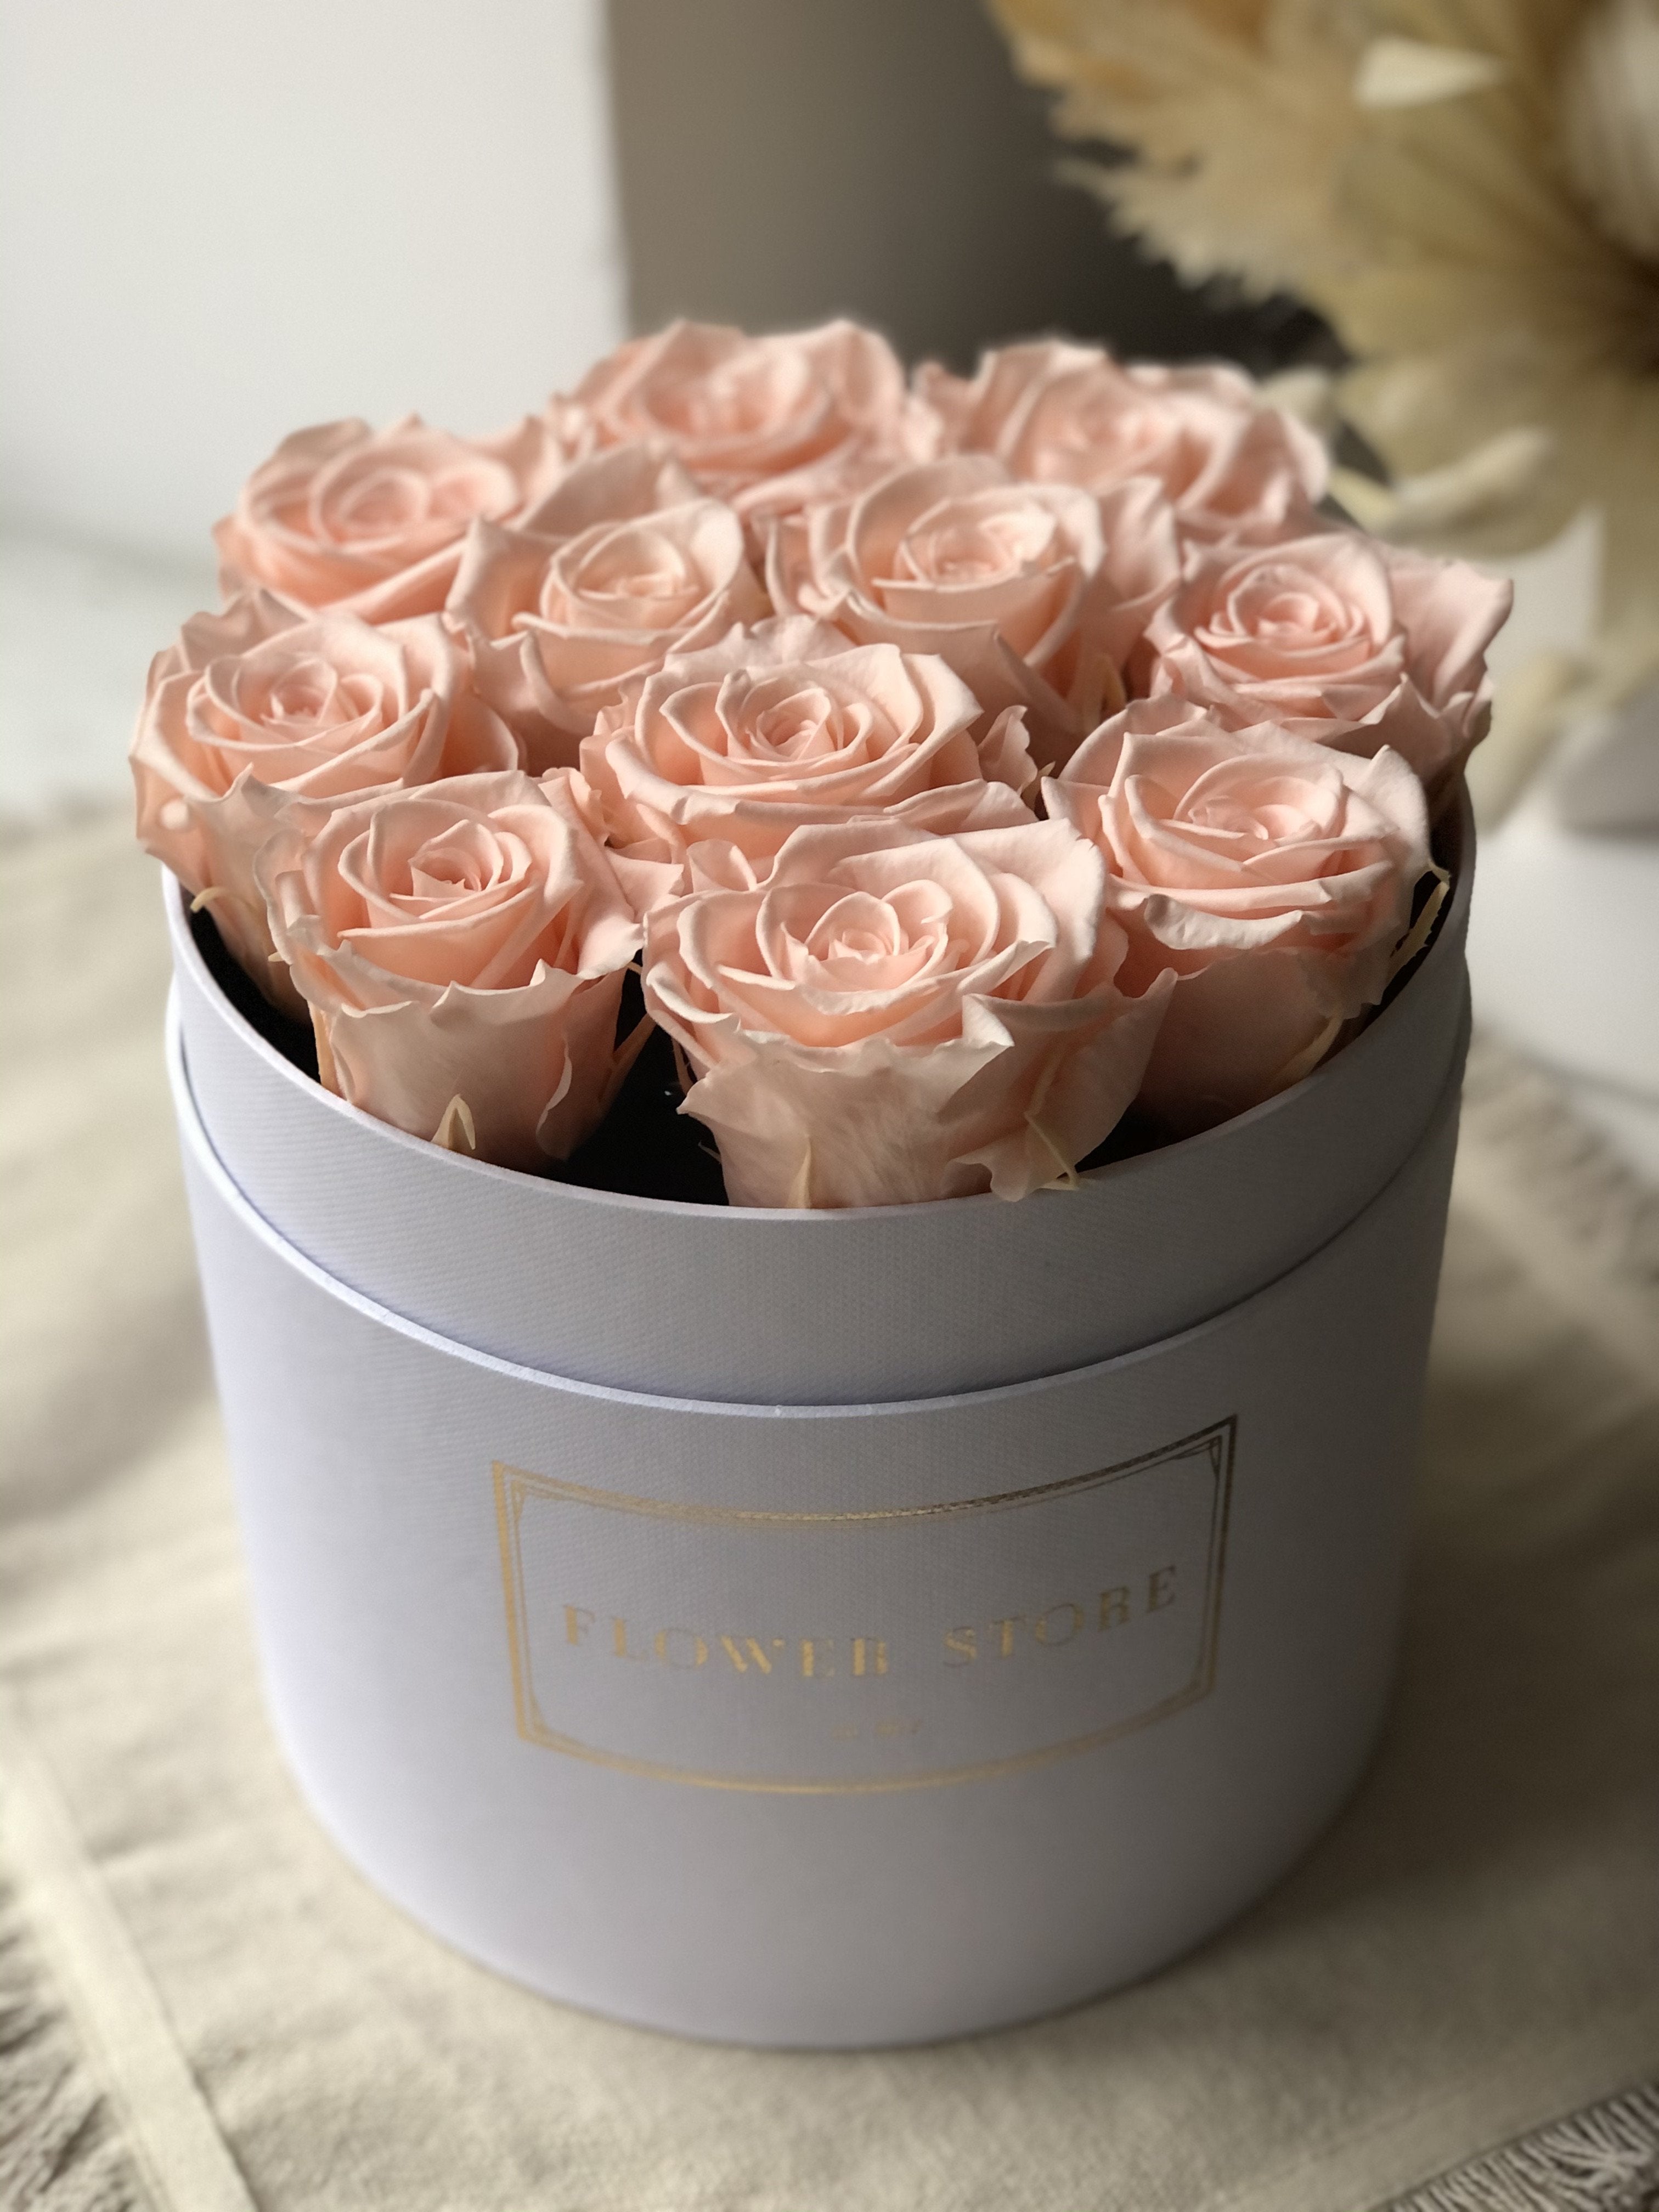 Белая коробочка с бледно-розовыми вечными розами.